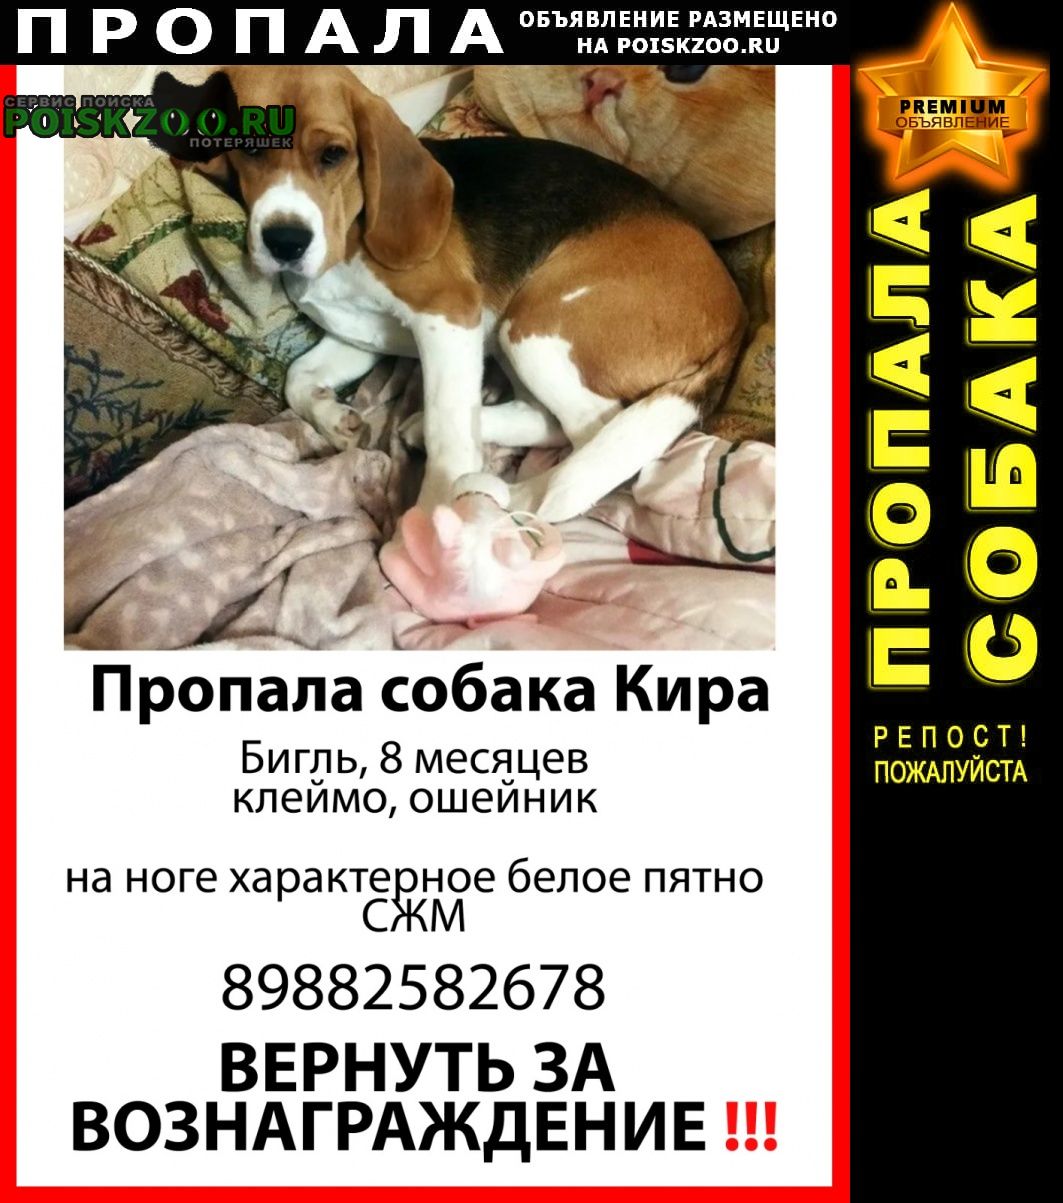 Пропала собака бигль девочка 8 месяцев сжм Ростов-на-Дону